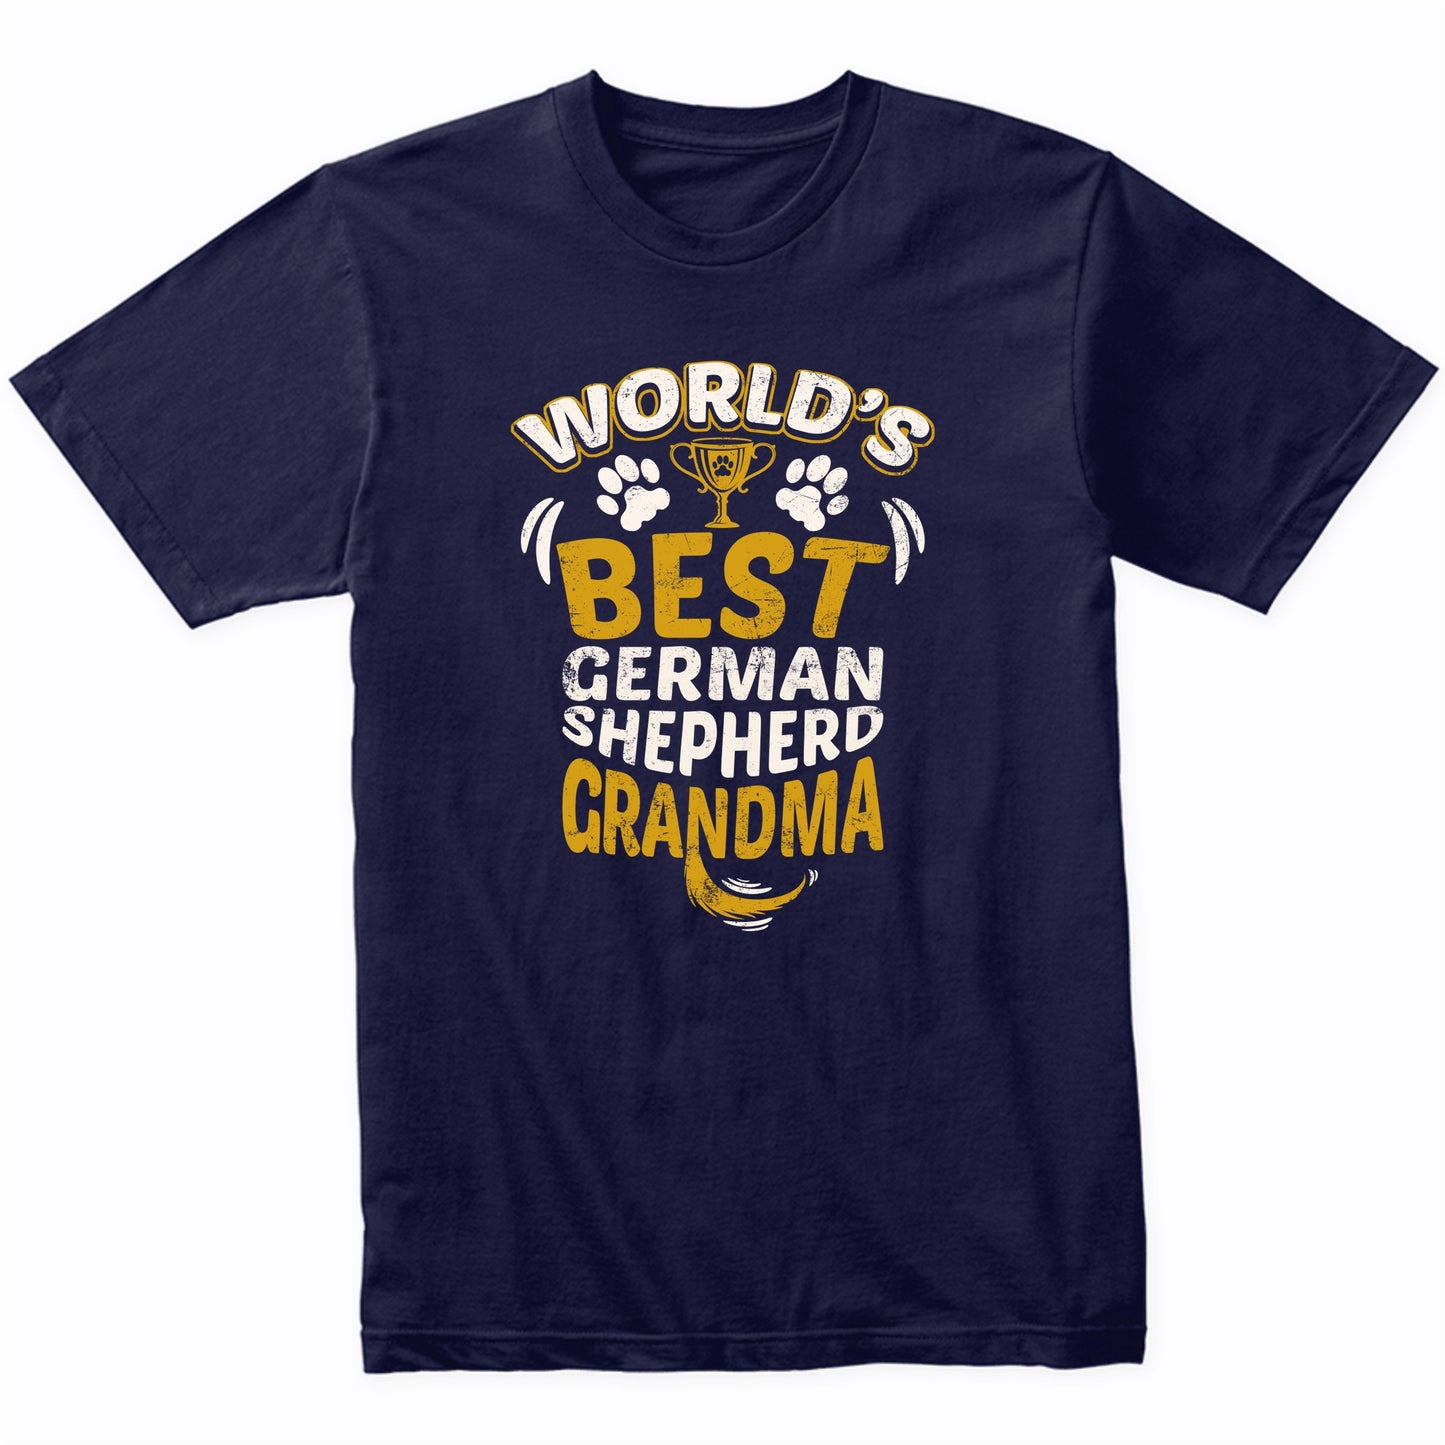 World's Best German Shepherd Grandma Graphic T-Shirt